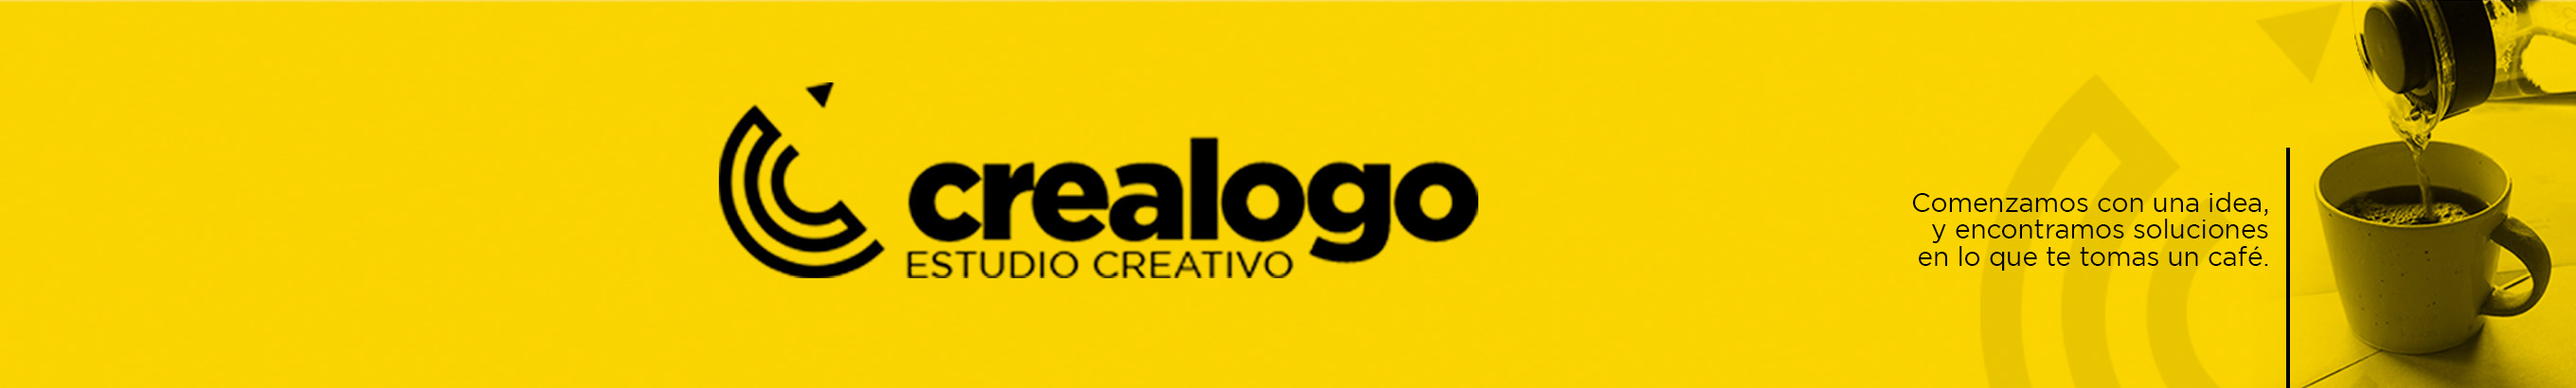 Crealogo Estudio Creativo's profile banner